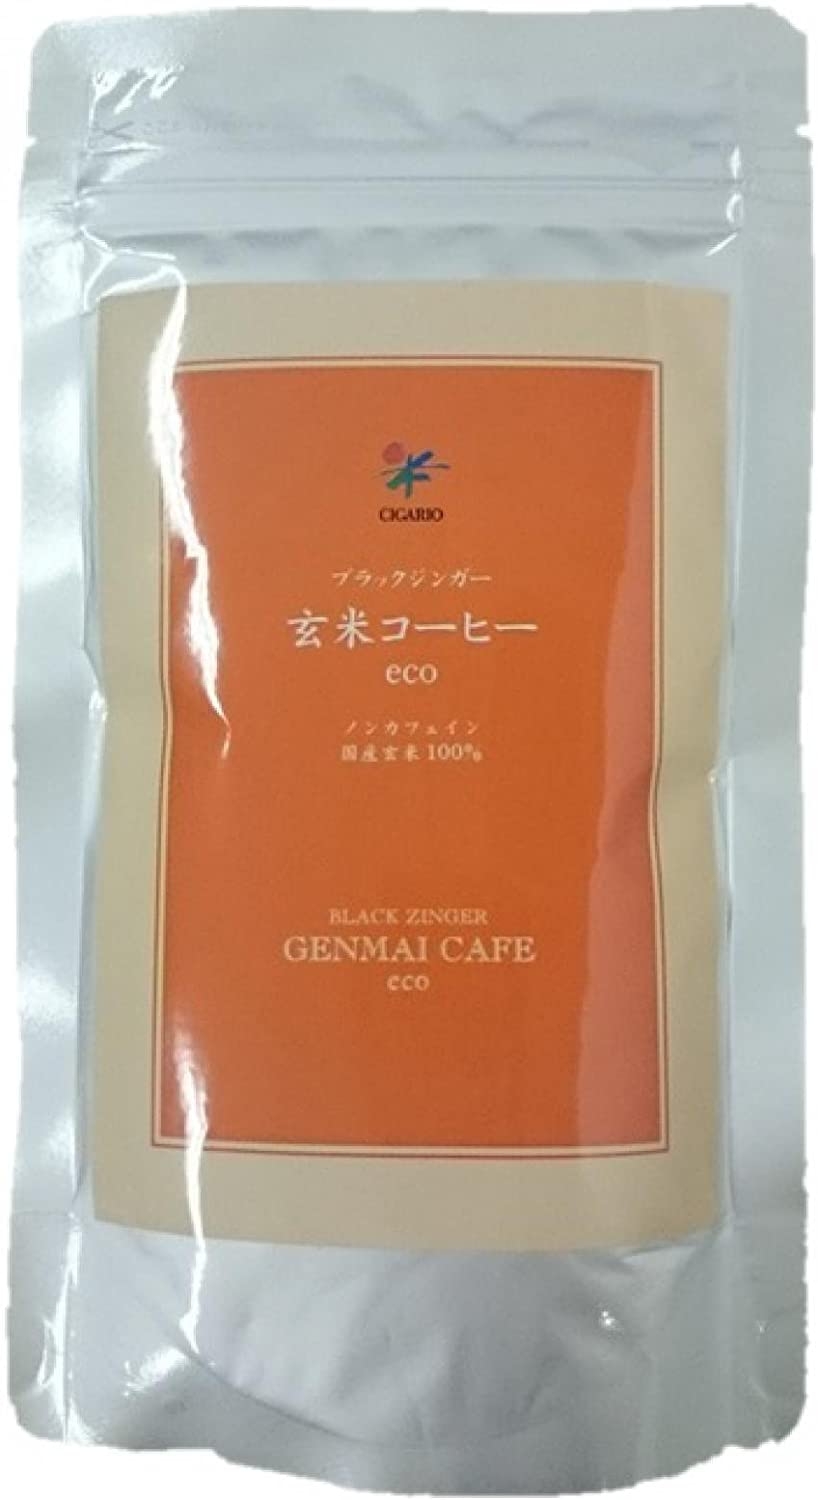 シガリオ ブラックジンガー 玄米コーヒー 120g お徳用の商品画像サムネ1 